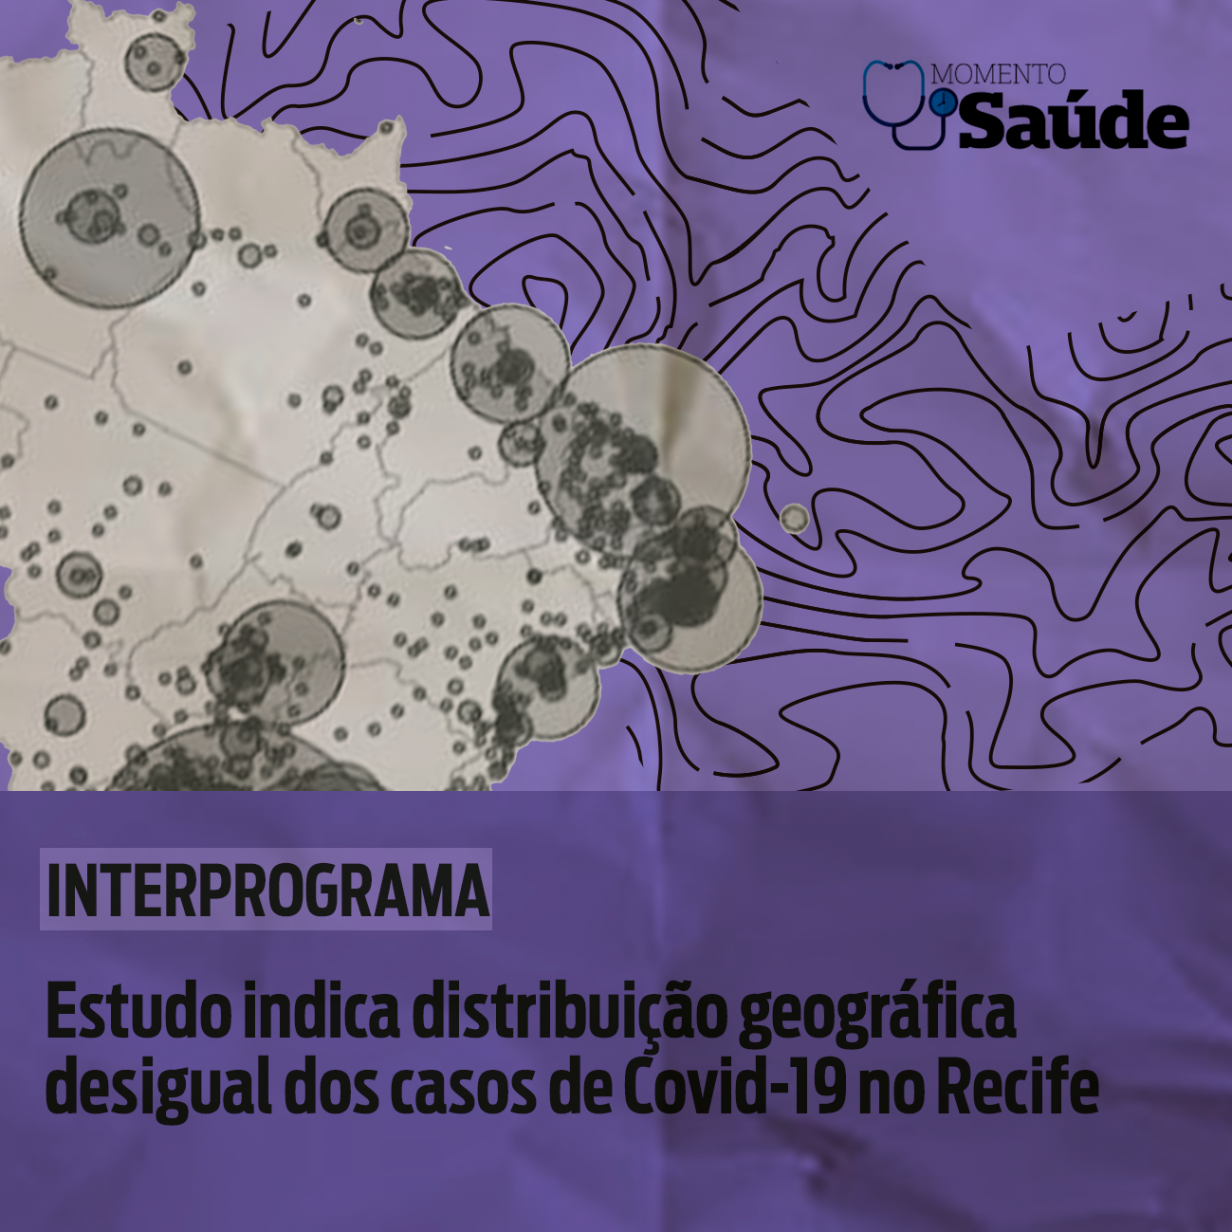 Estudo indica distribuição geográfica desigual dos casos de Covid-19 no Recife